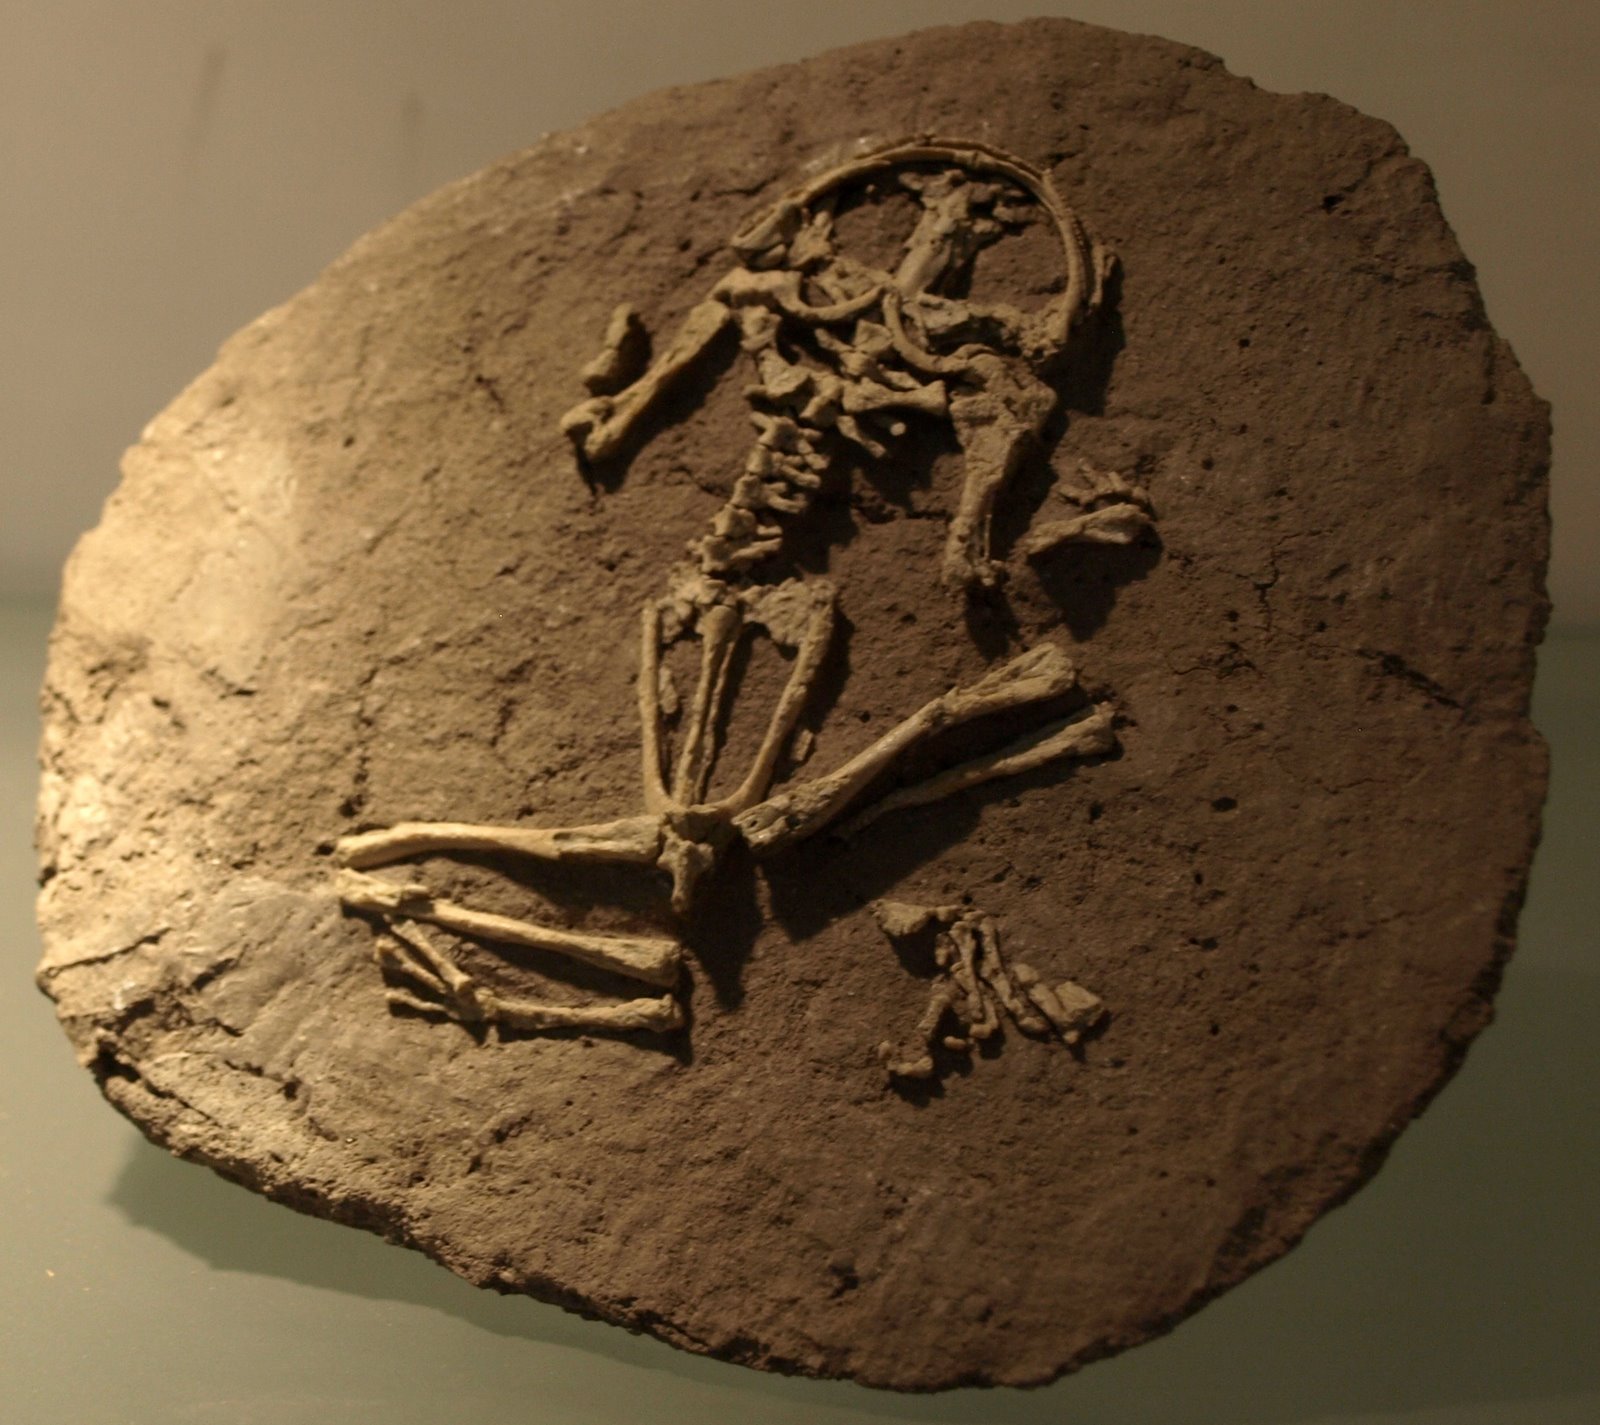 Capt Mondo's Photo Blog » Paleozoological Museum of China